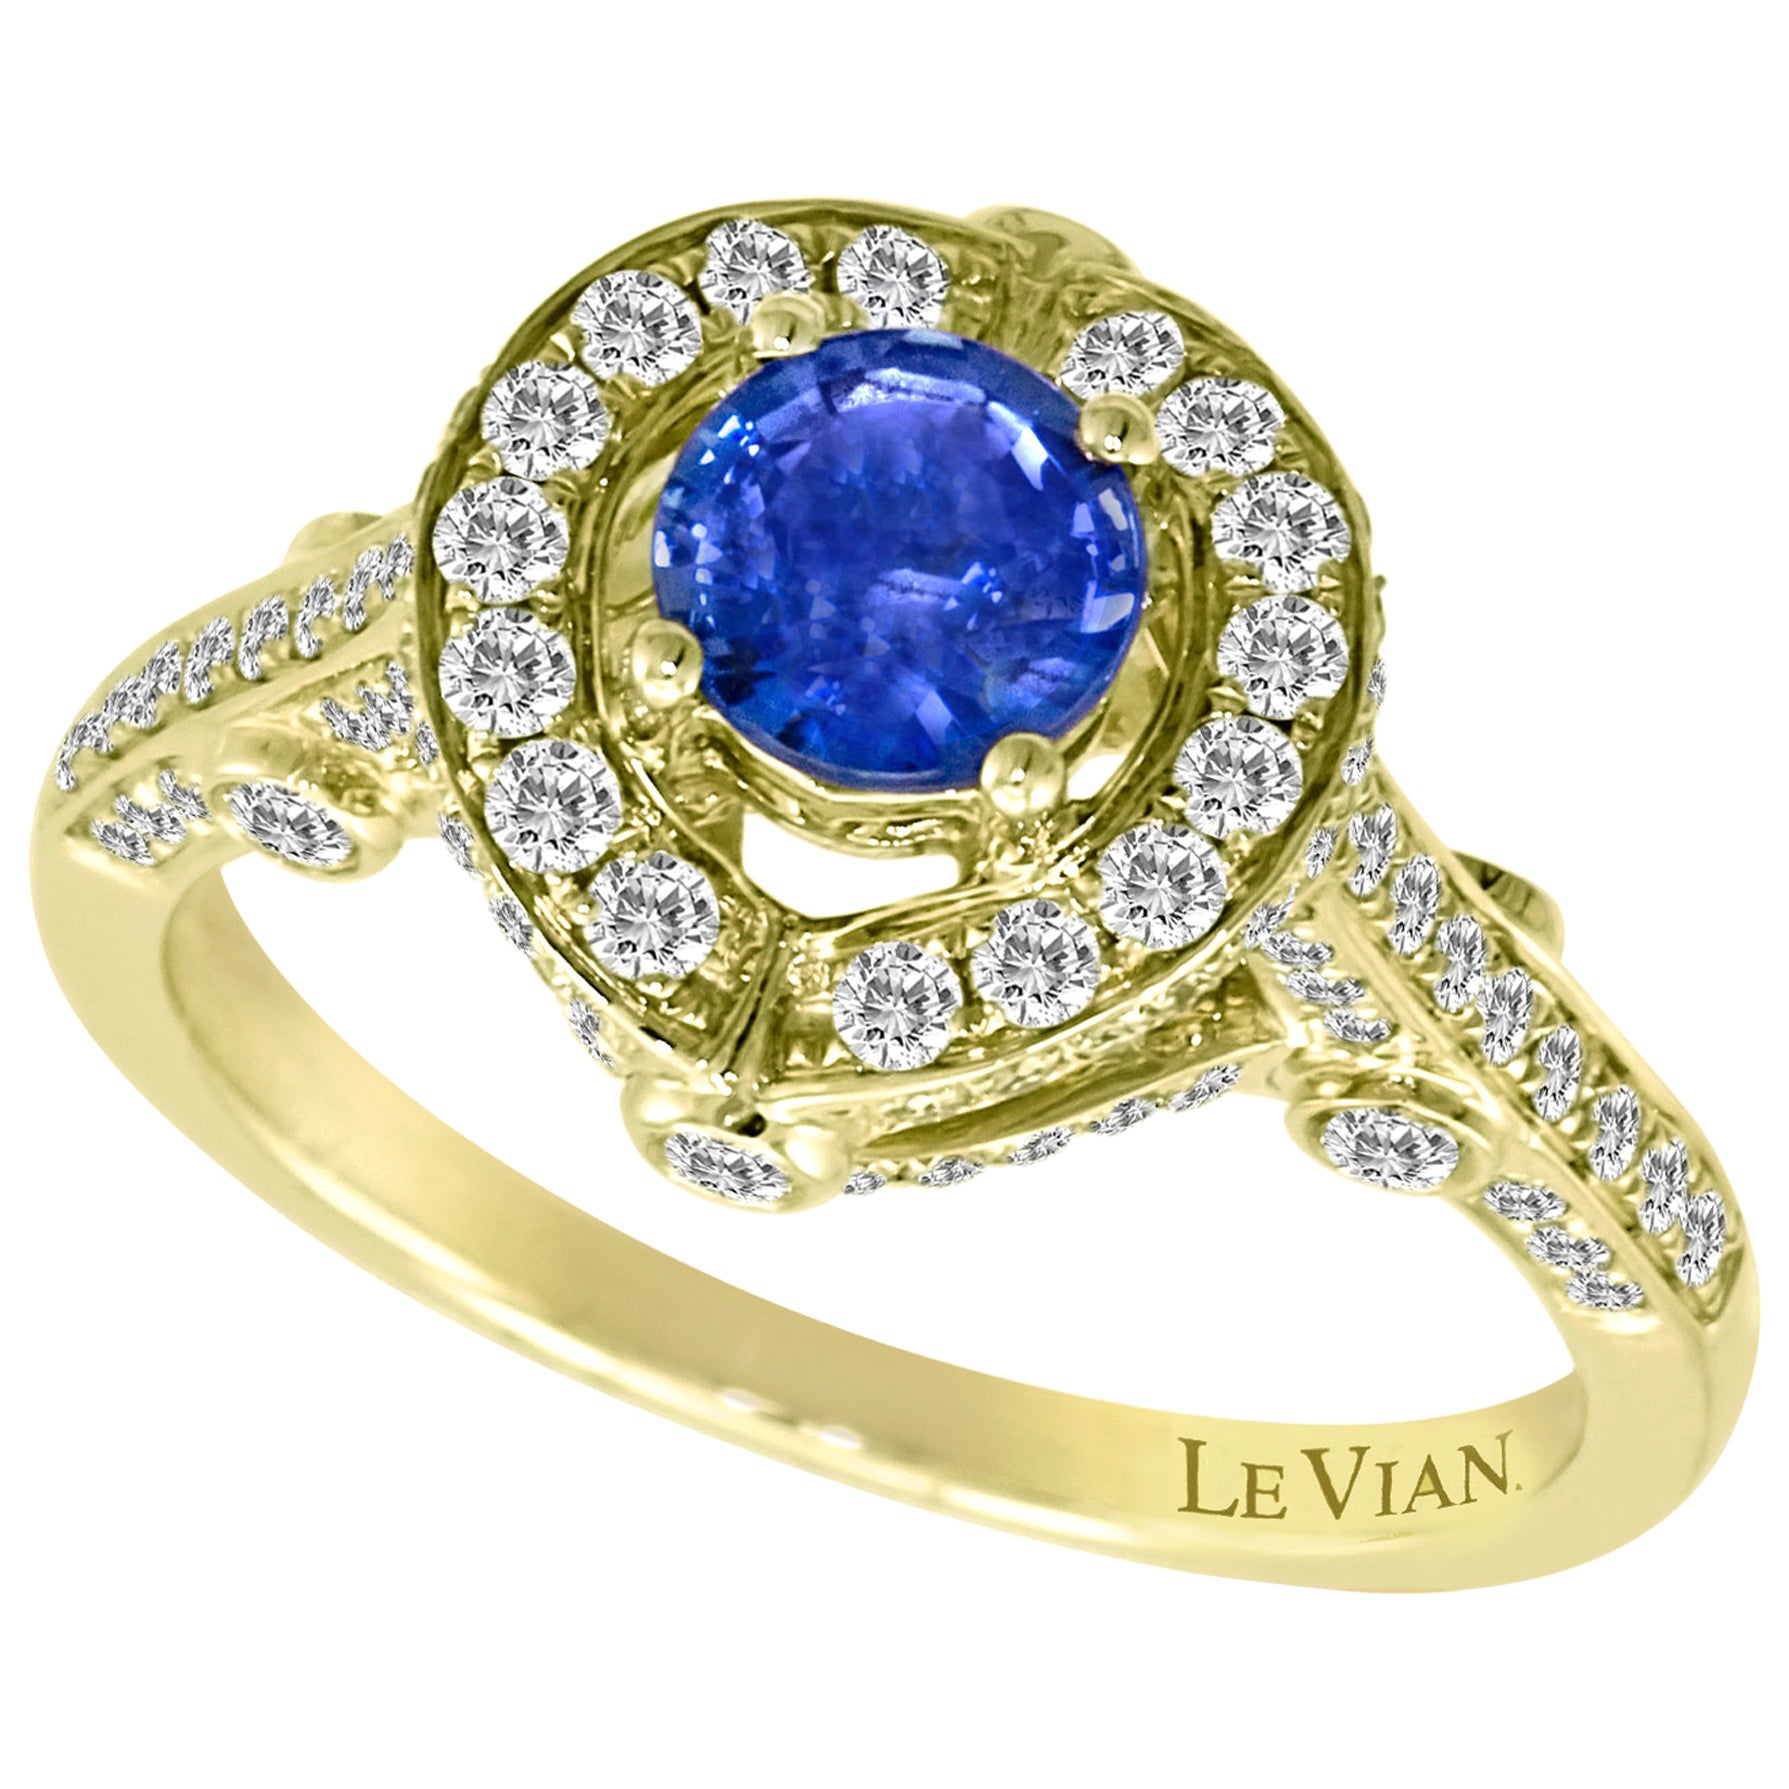 LeVian Bague cocktail en or jaune 18 carats avec saphir bleu de Ceylan et halo de diamants ronds